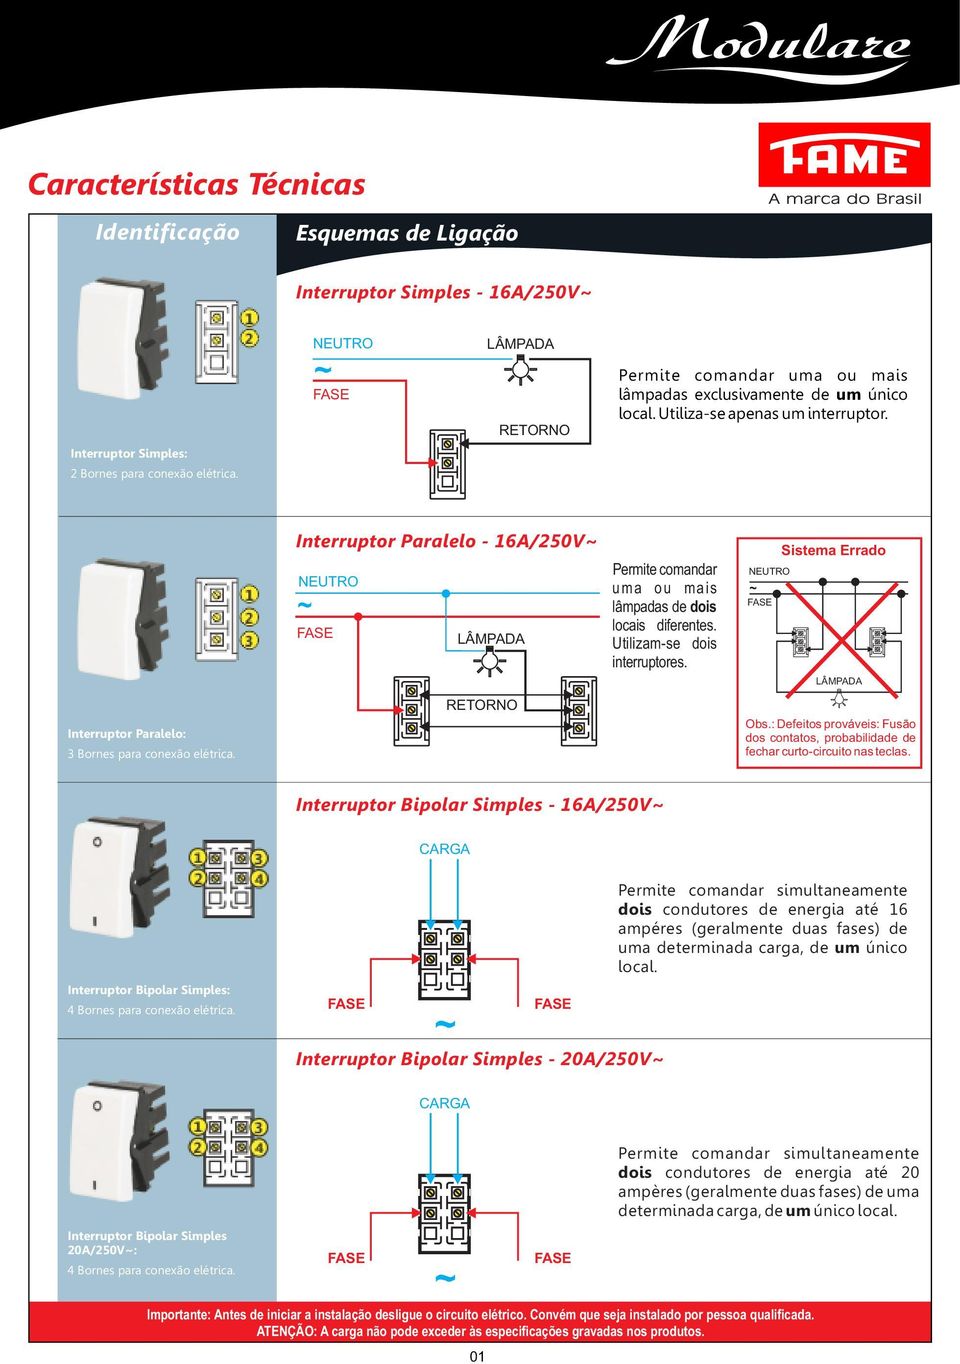 Utilizam-se dois interruptores. Sistema Errado Obs.: Defeitos prováveis: Fusão dos contatos, probabilidade de fechar curto-circuito nas teclas.